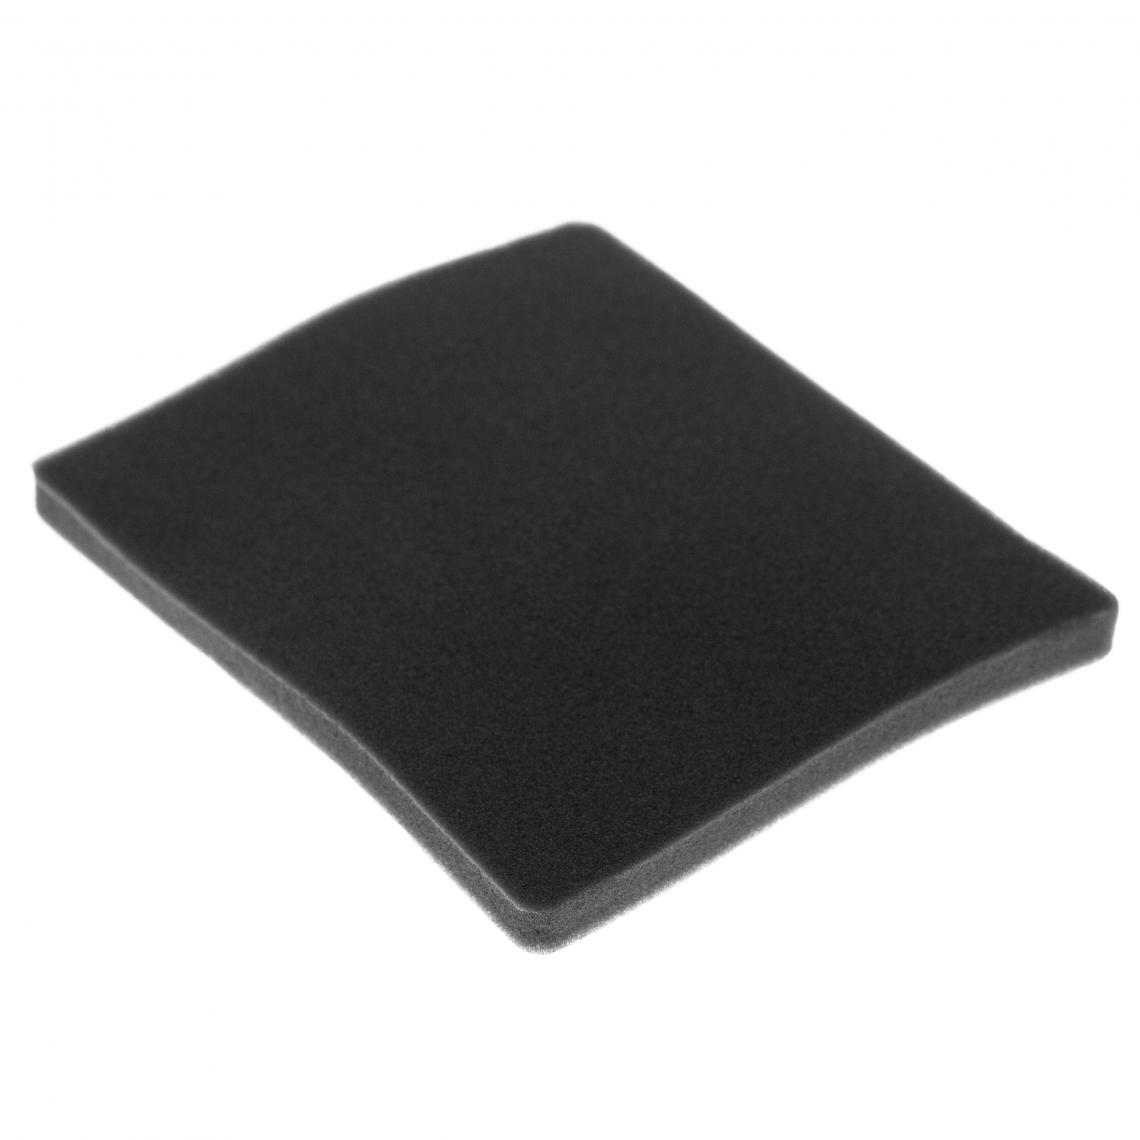 Vhbw - vhbw Filtre compatible avec Electrolux ZCX6201 (910286665) aspirateur - filtre de sortie d'air (filtre éponge), noir - Accessoire entretien des sols